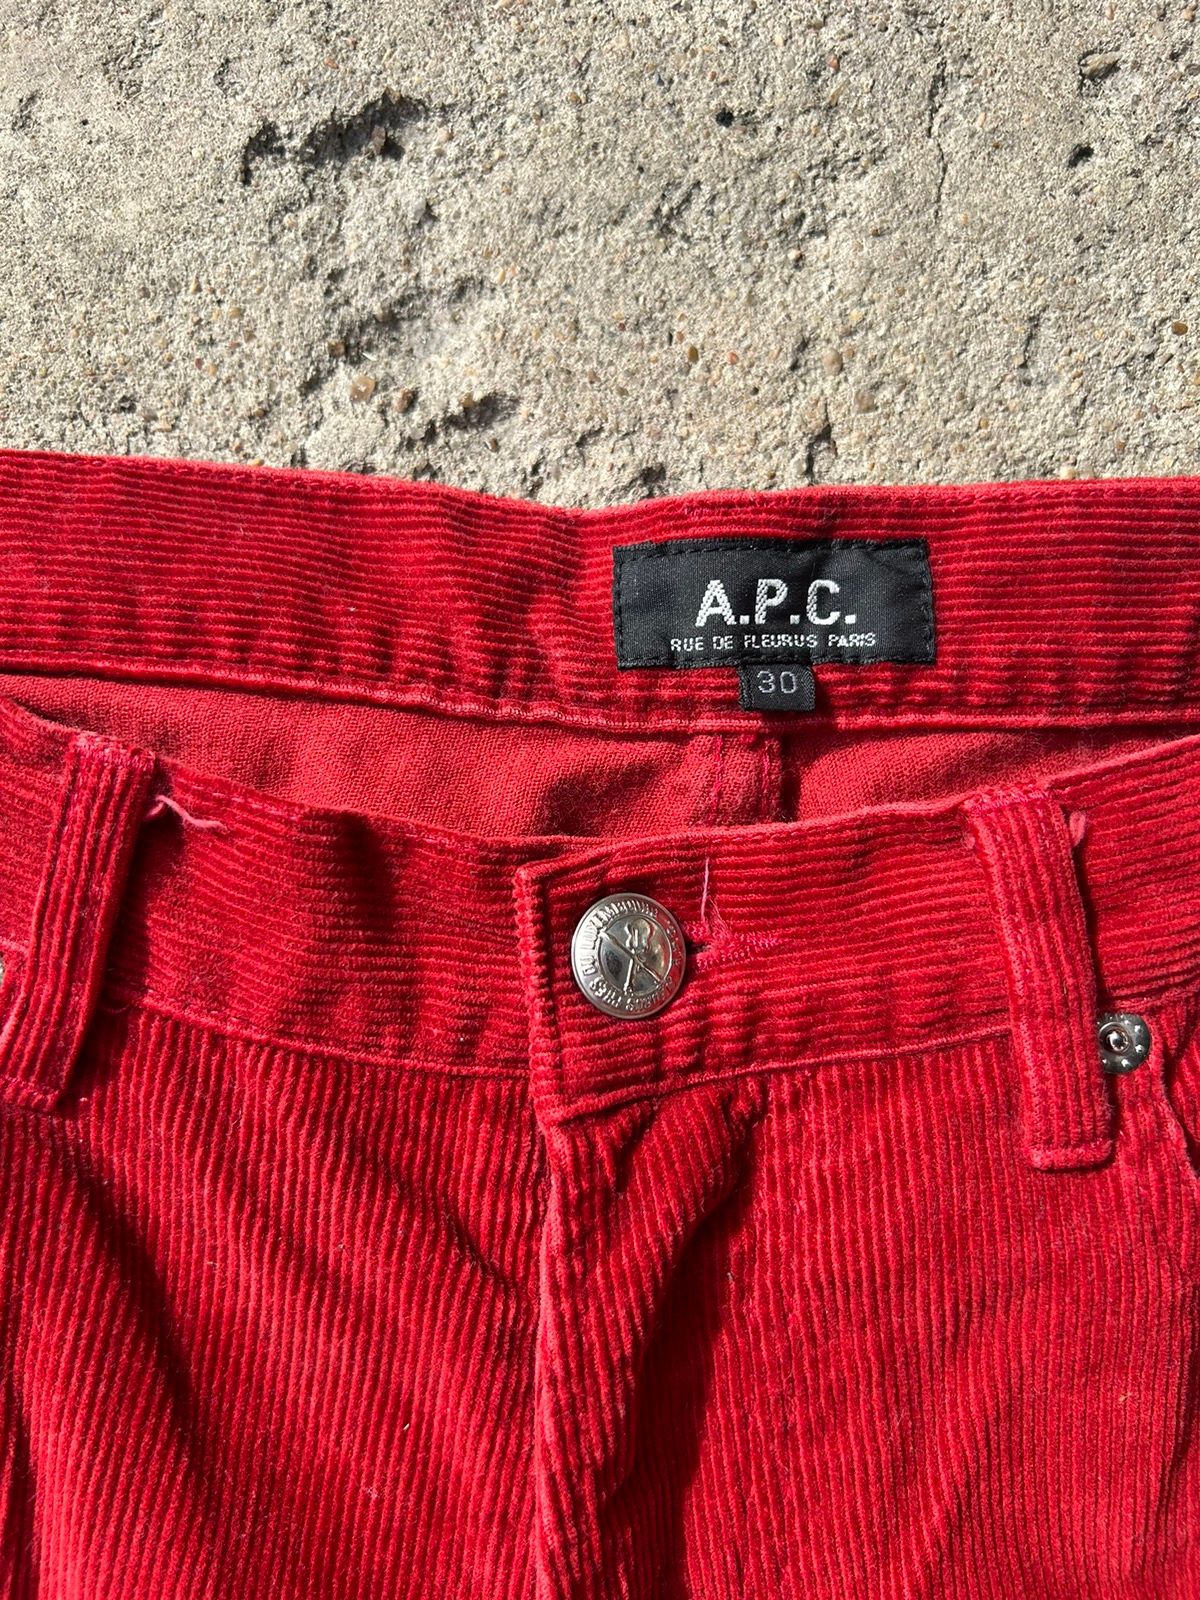 A.P.C. A.P.C 2000 RED CORDUROY pants Size US 30 / EU 46 - 2 Preview